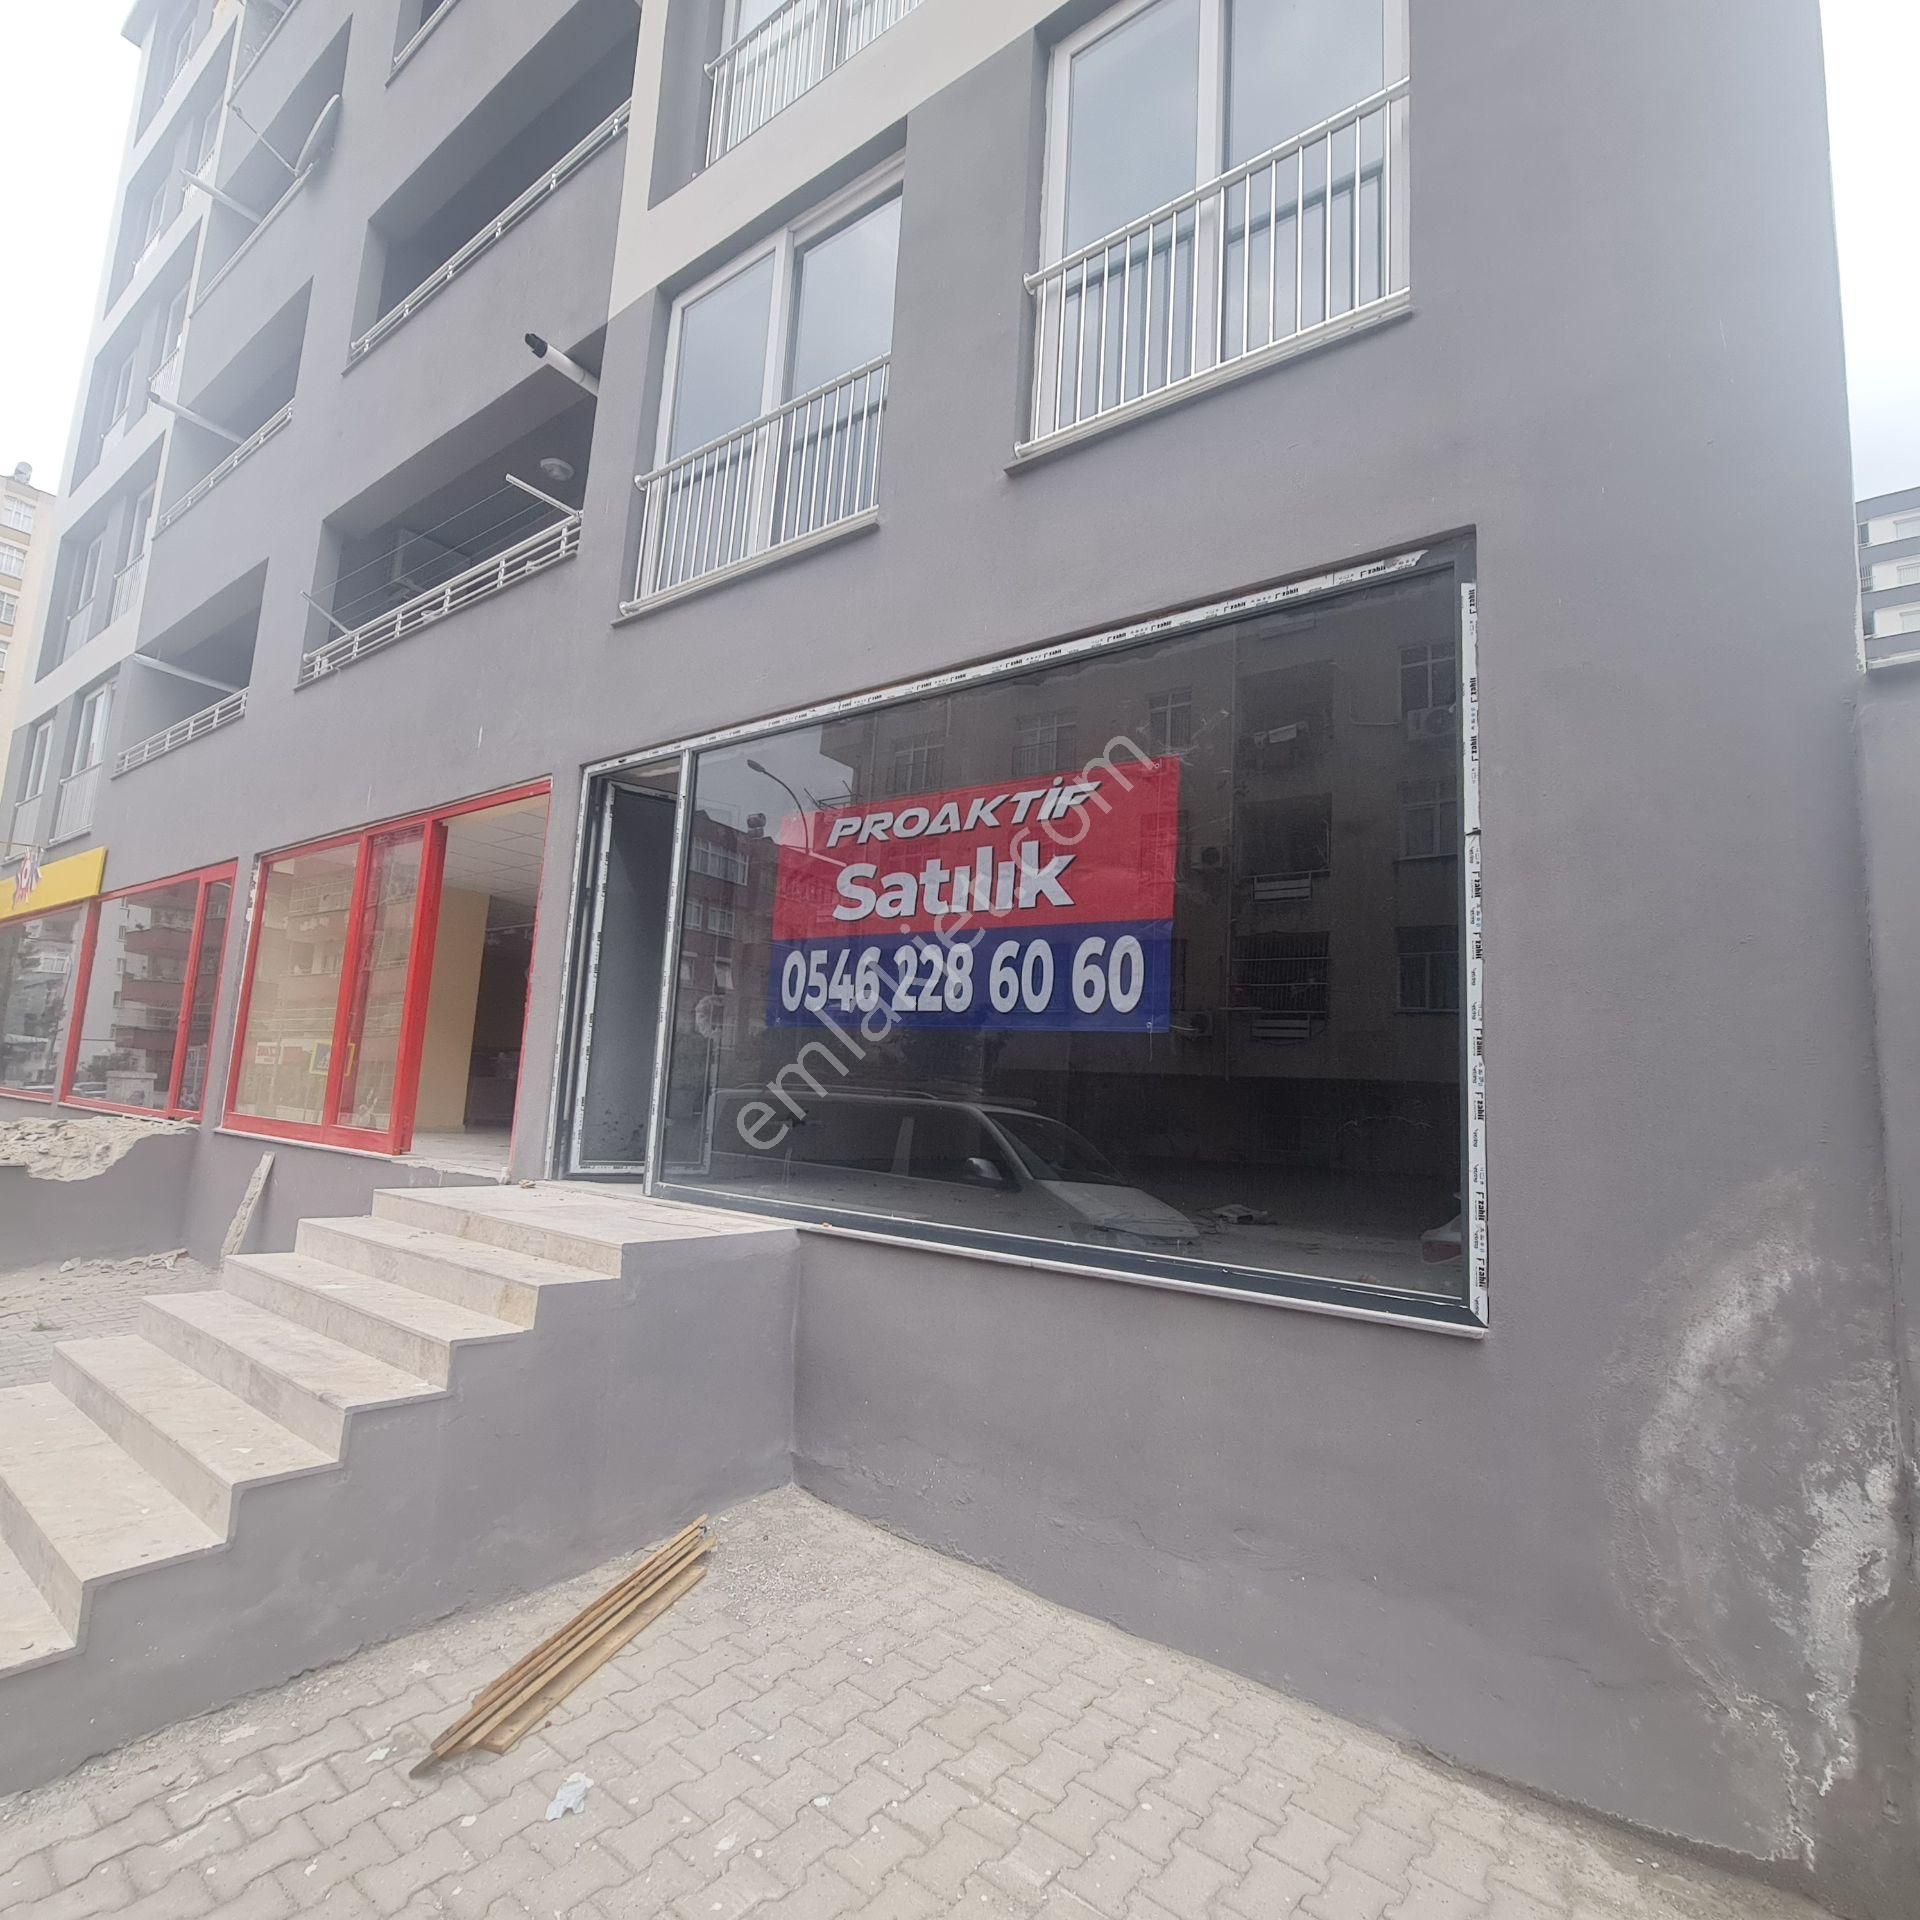 Çukurova Yurt Satılık Dükkan & Mağaza  Ceylan Market Civarı Yeni İnşaat Altı 73m2 Dükkan